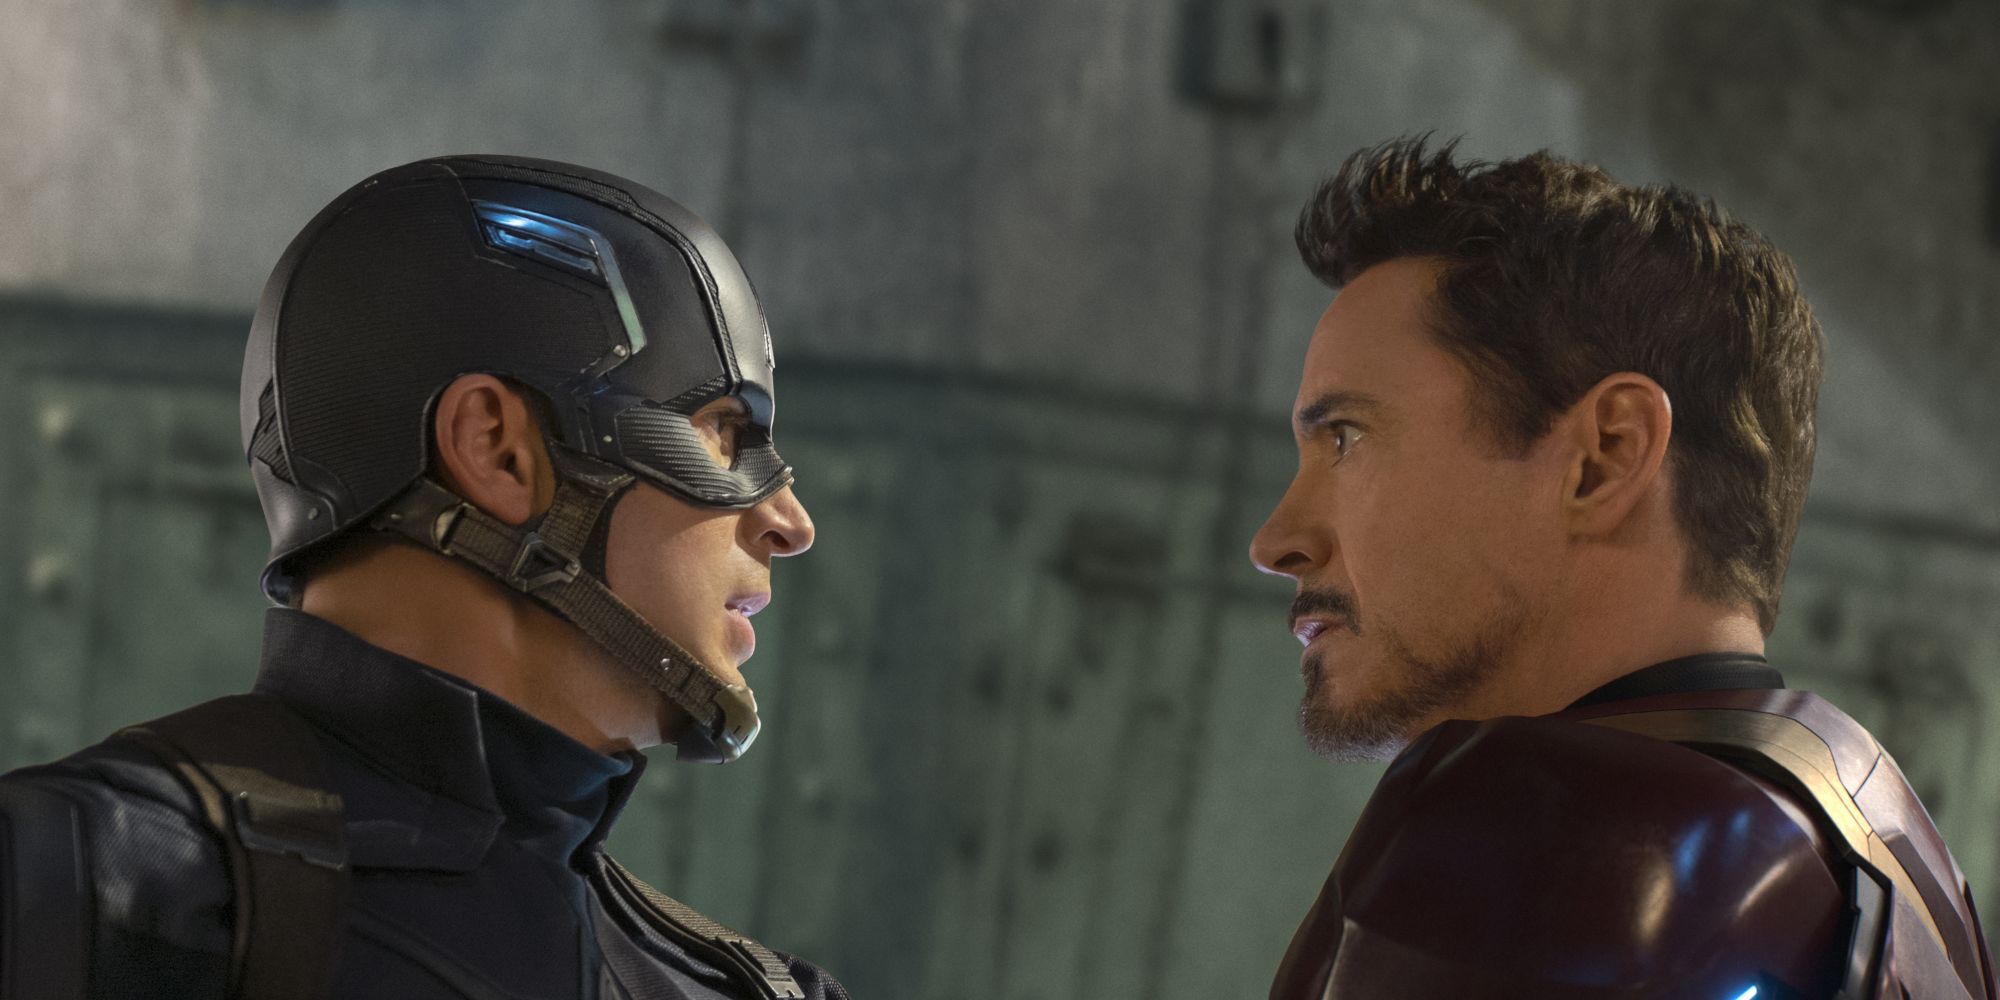 Chris Evans and Robert Downey Jr in Captain America: Civil War (2016)